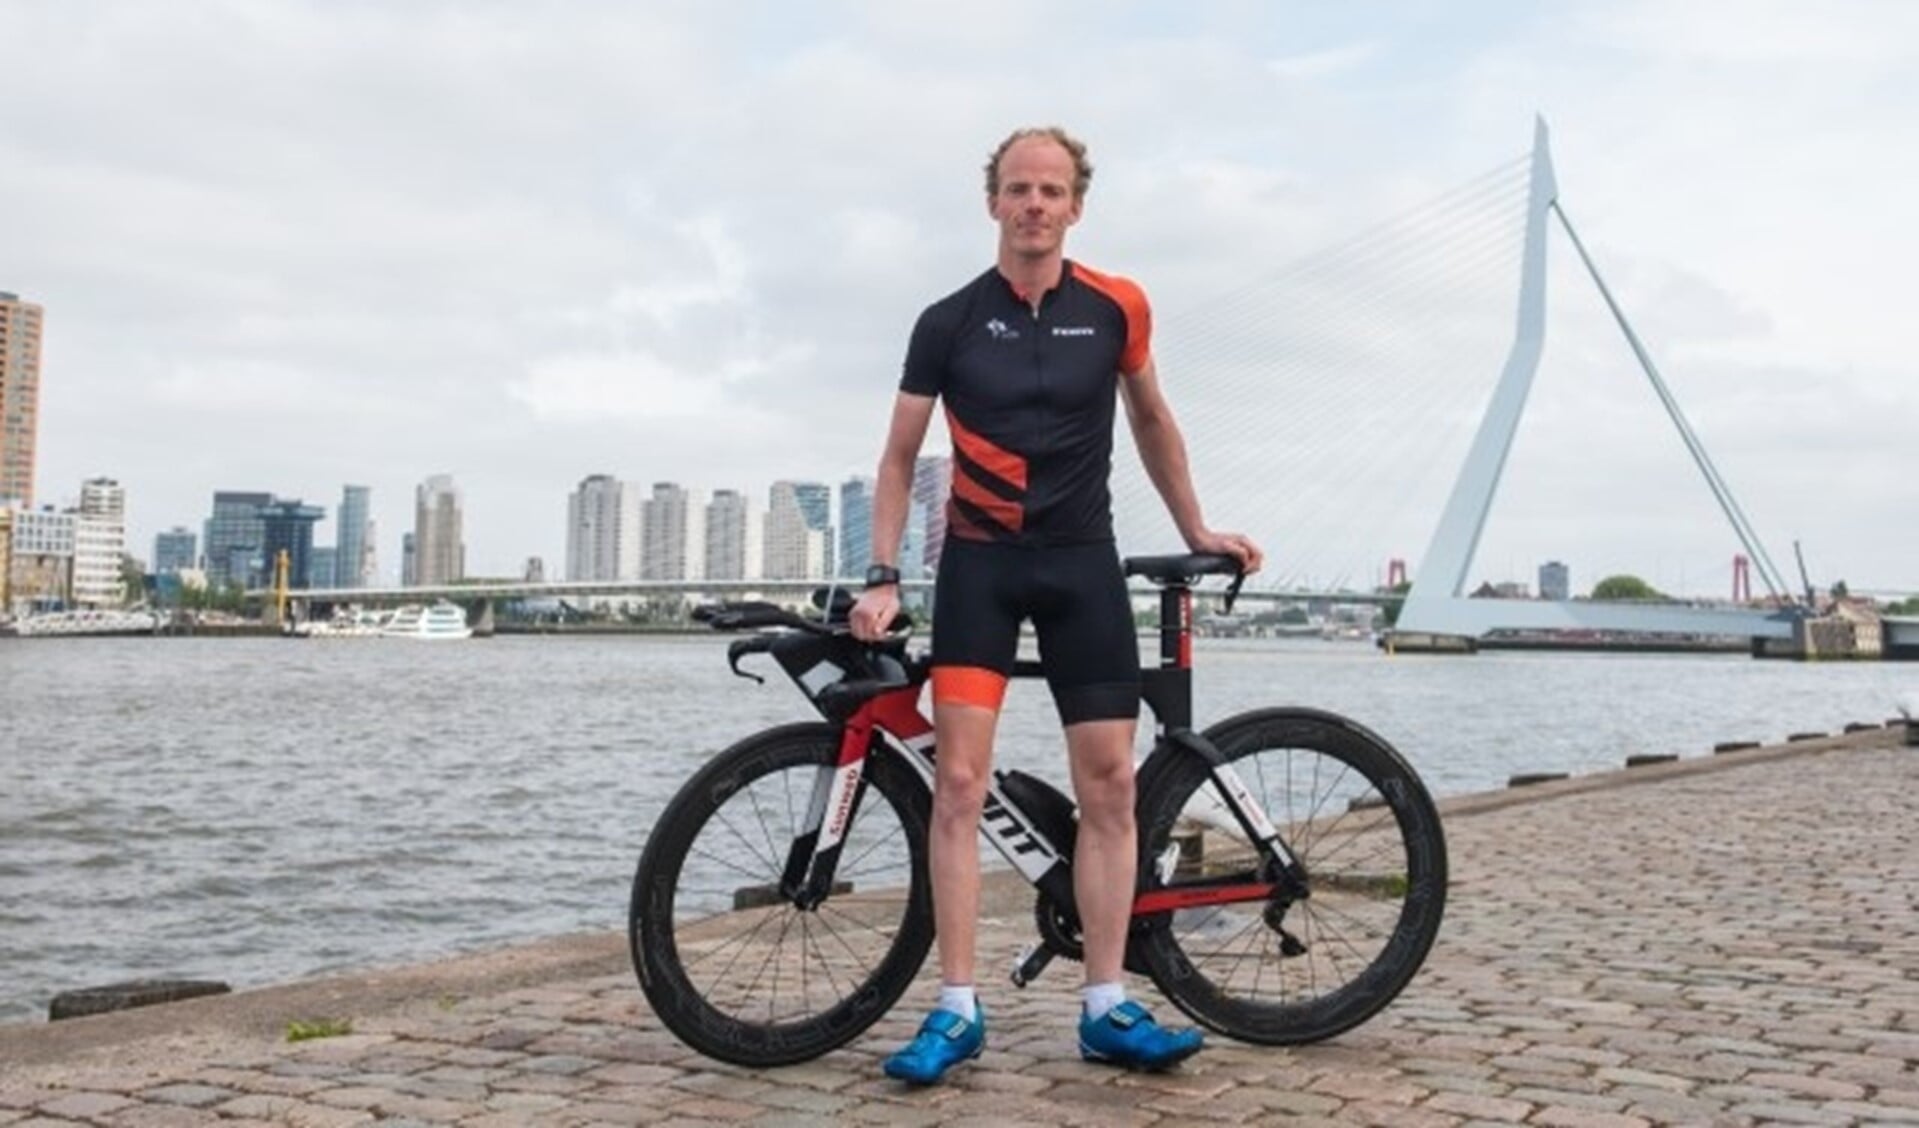 Paratriatleet Maurits Morsink vindt Rotterdam dé sportstad van Nederland. Lees meer over hem in een uitgebreid interview op de website van Rotterdam Topsport. (Foto: Ferdy Collewijn)